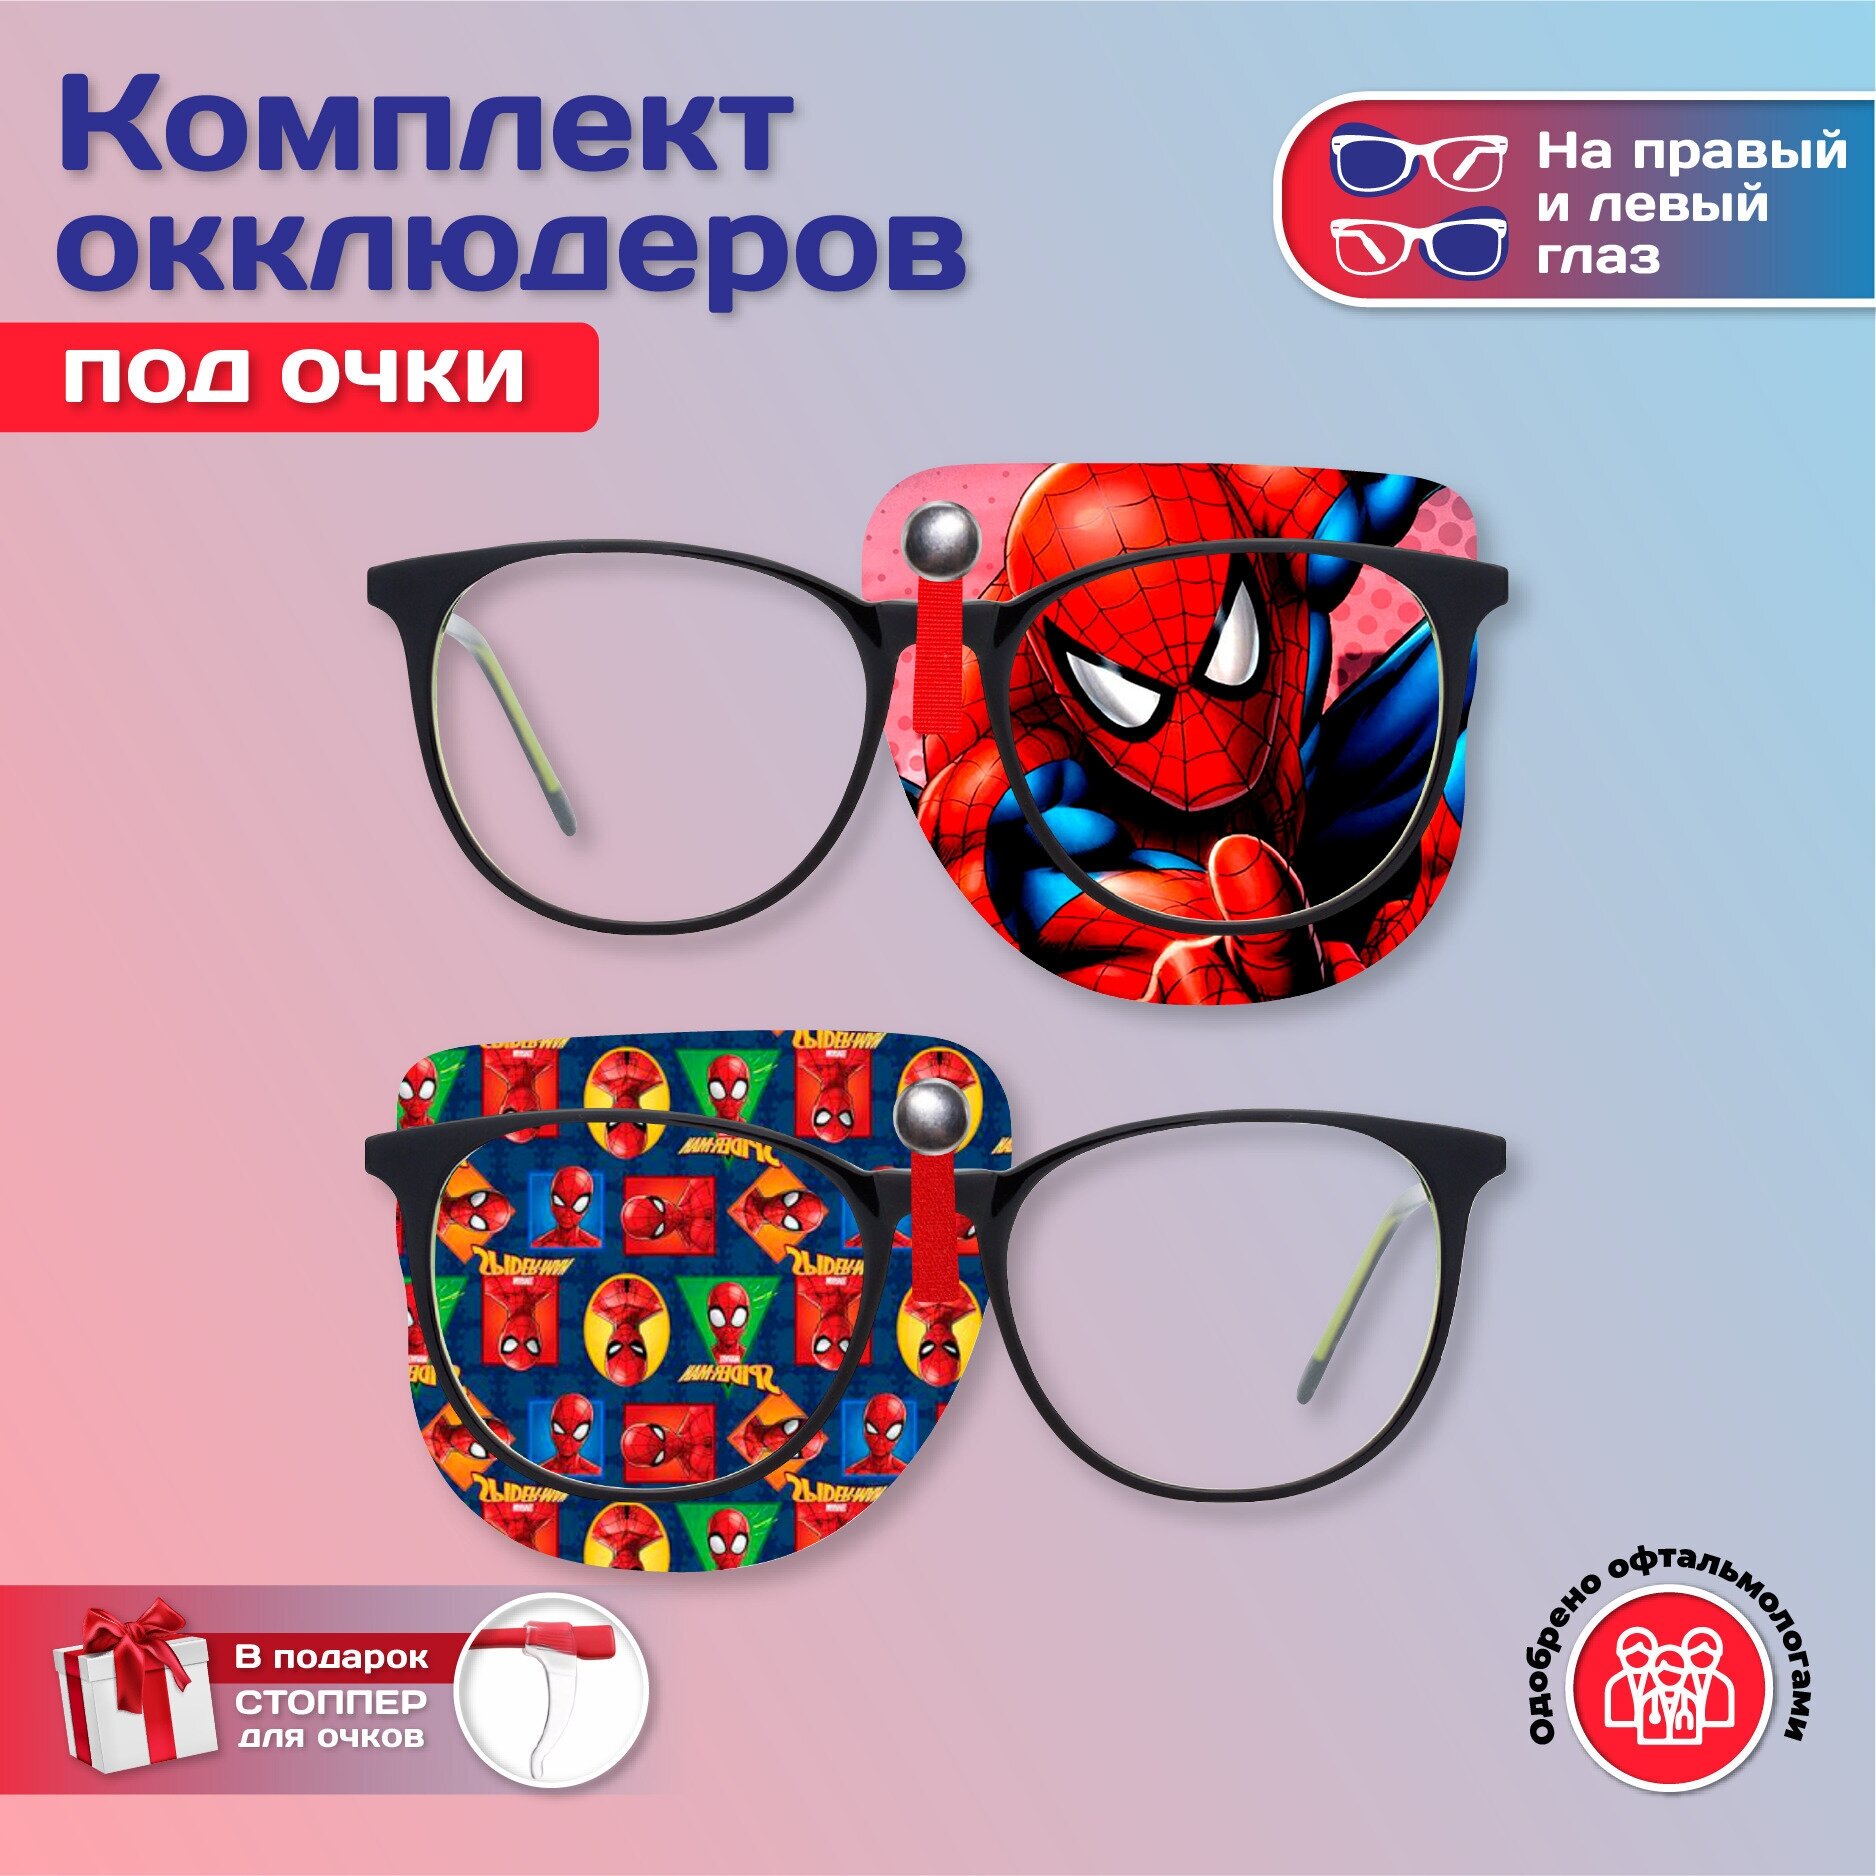 Комплект окклюдеров под очки "Человек-Паук" на левый и правый глаз